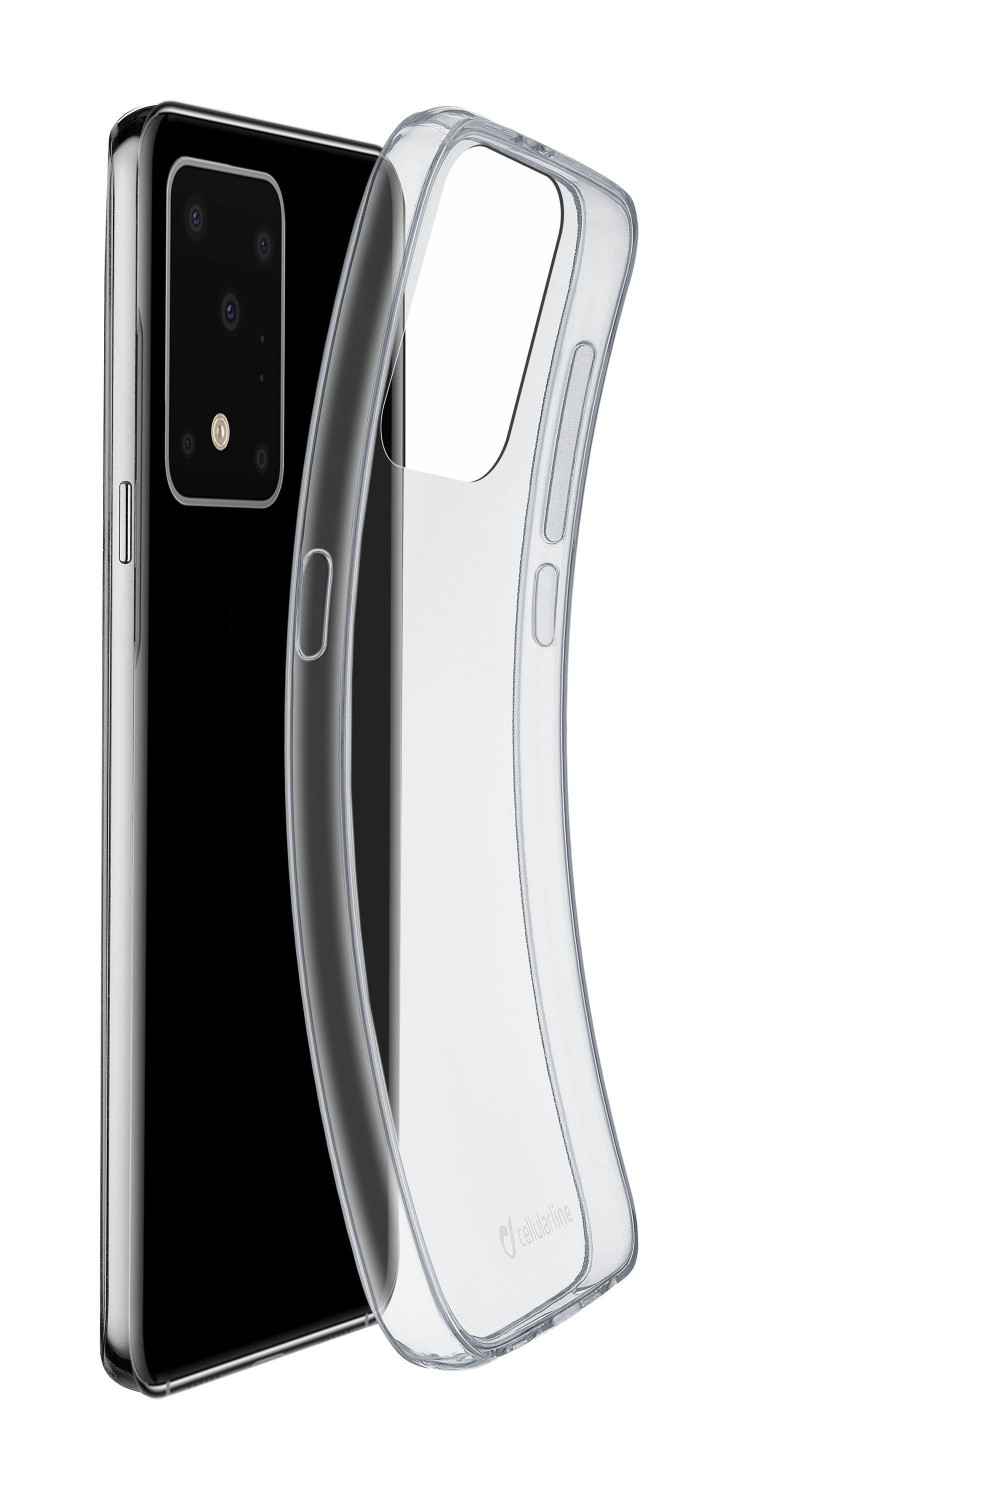 Extratenký zadný kryt CellularLine Fine pre Samsung Galaxy S20 Ultra, transparentná